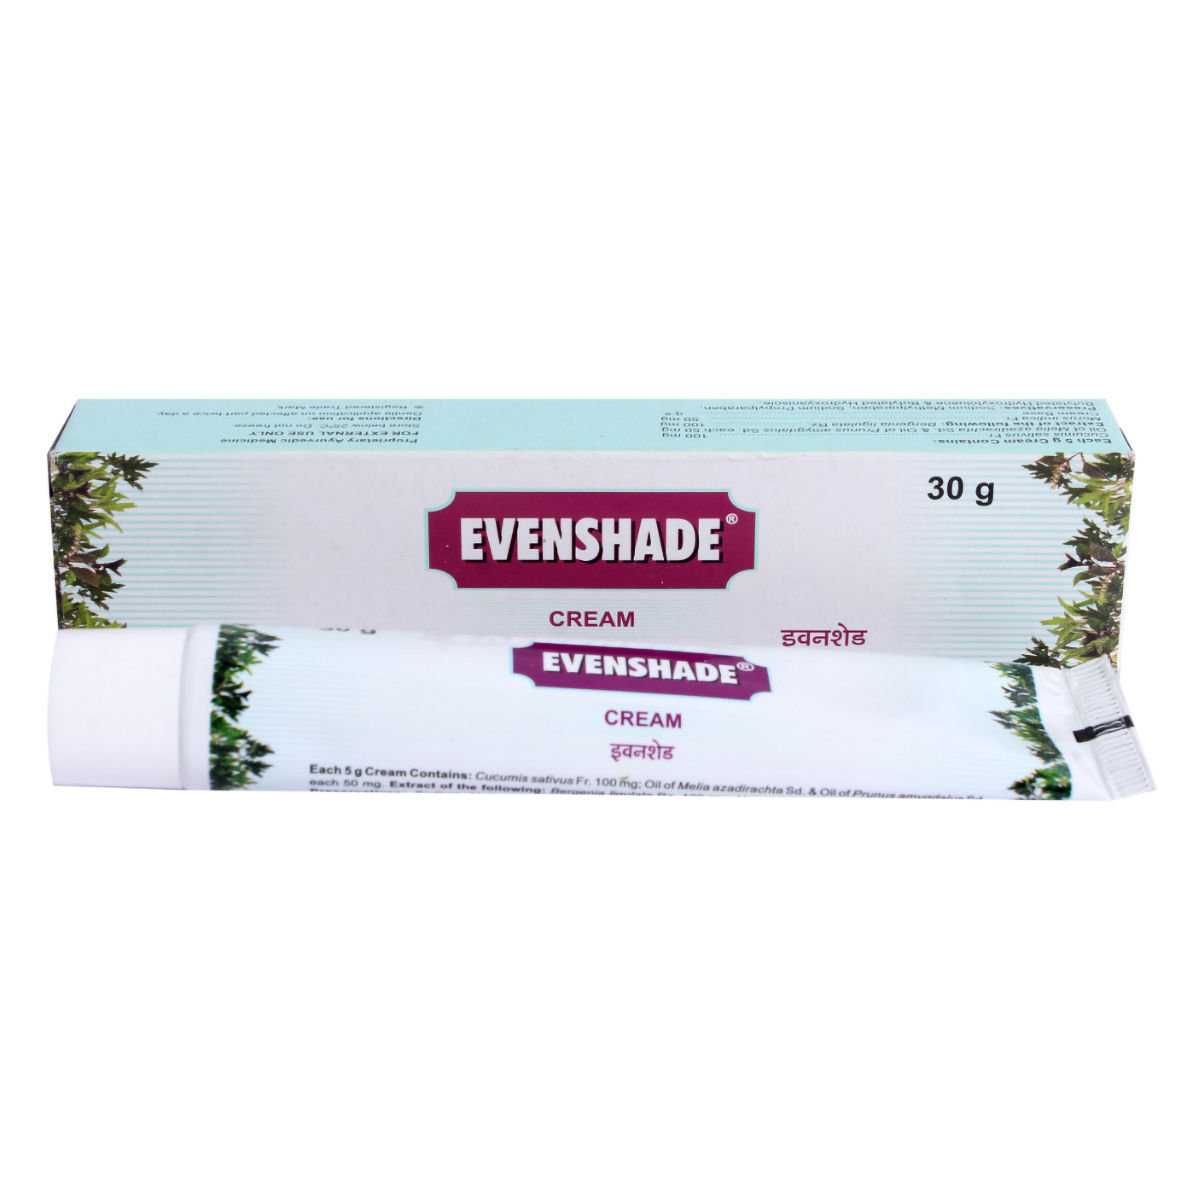 Charak Evenshade Cream, 30 gm, Pack of 1 